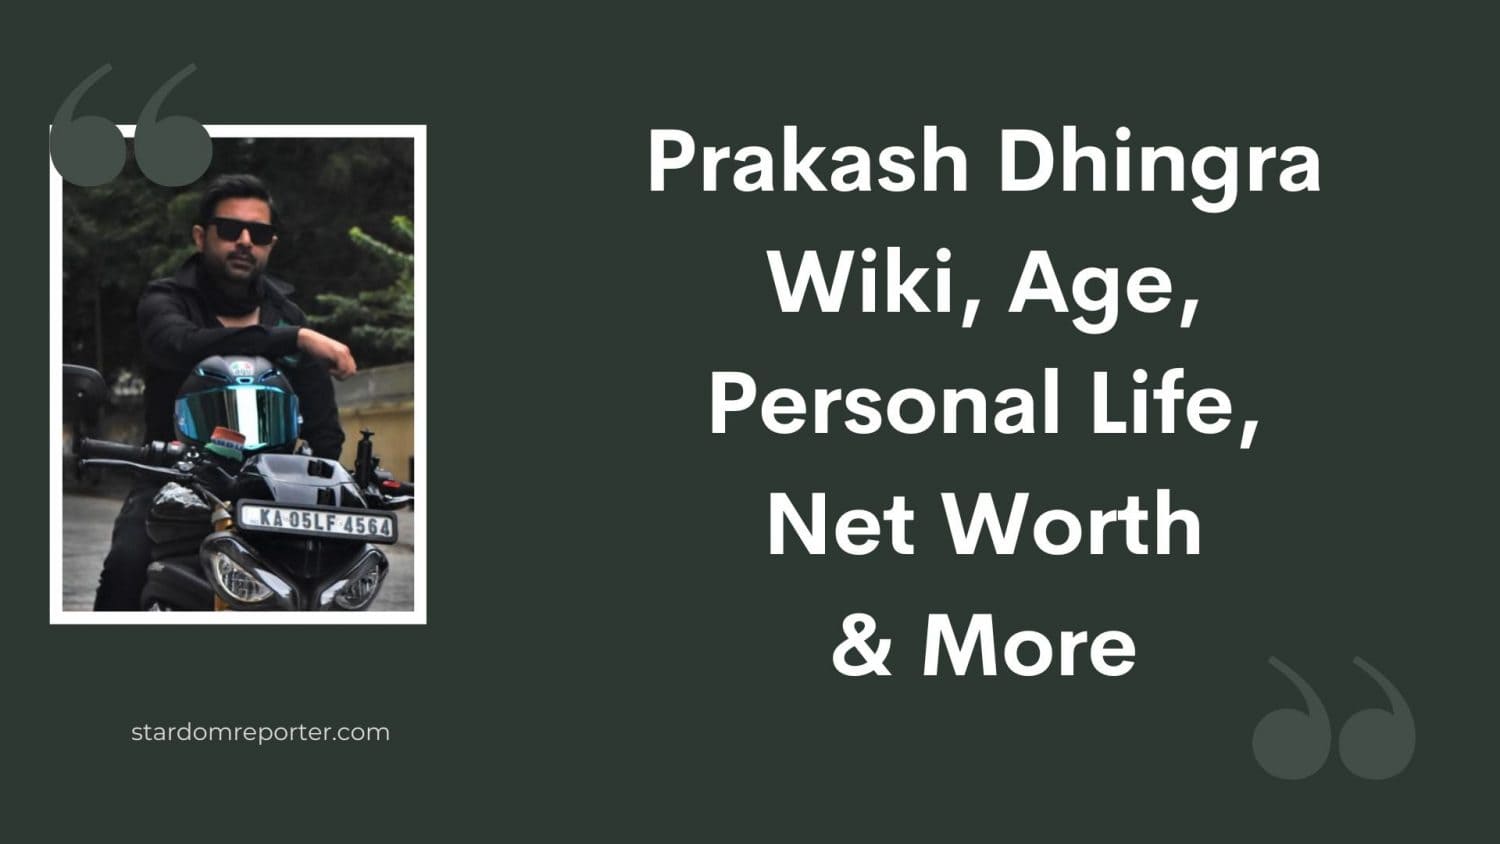 Prakash Dhingra Wiki, Age, Personal Life, Net Worth & More - 25